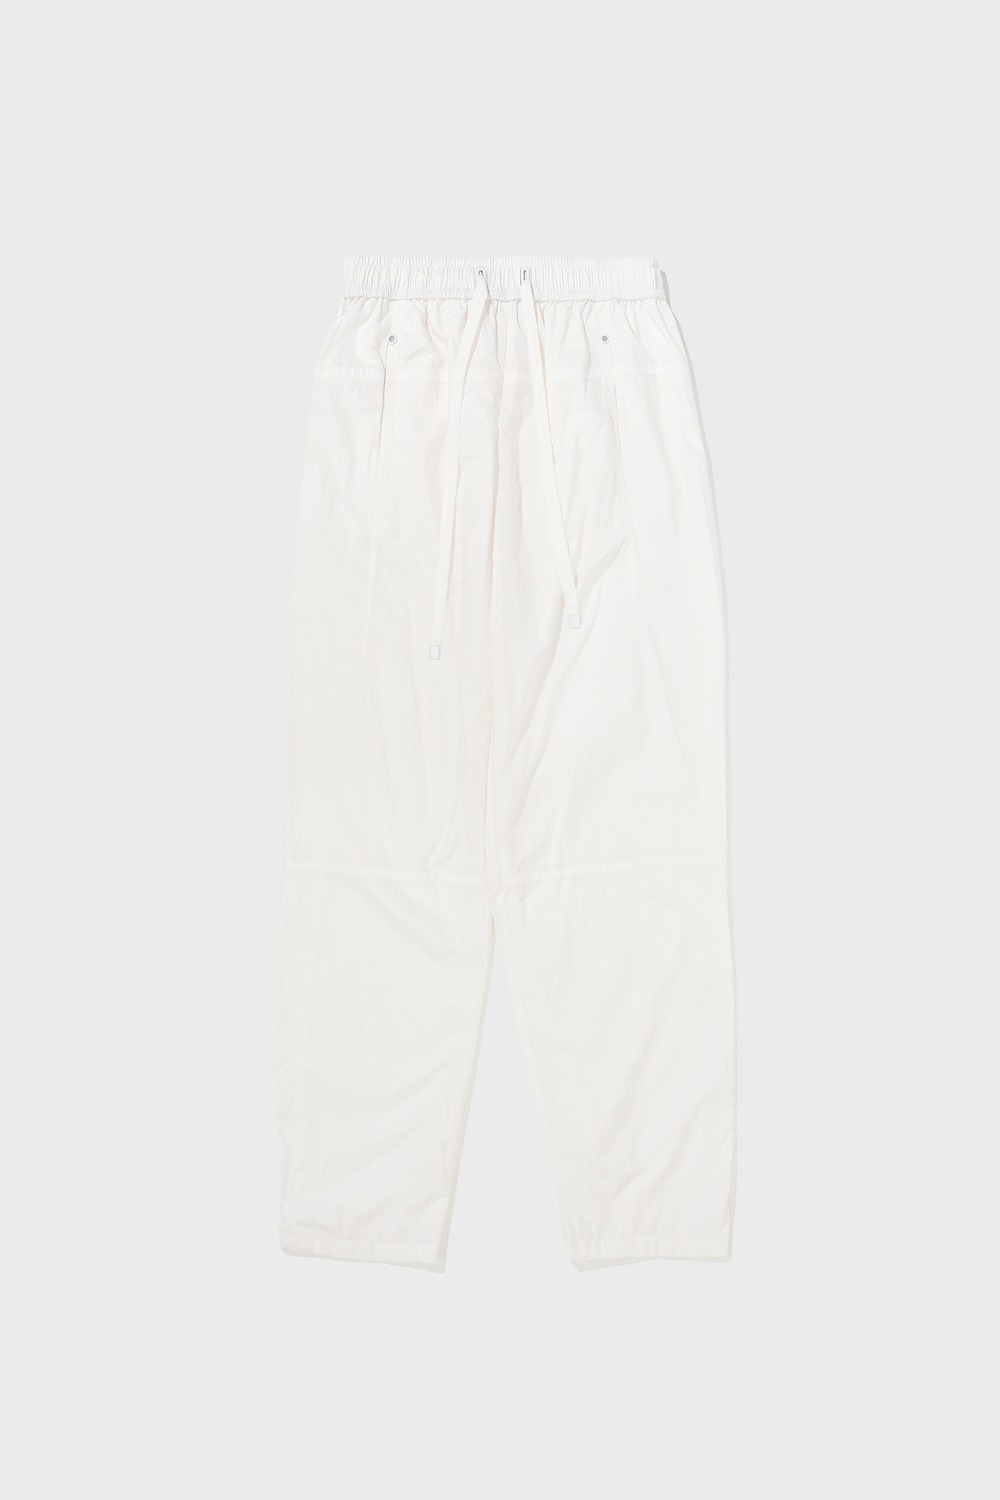 22PF NYLON JOGGER PANTS - WHITE